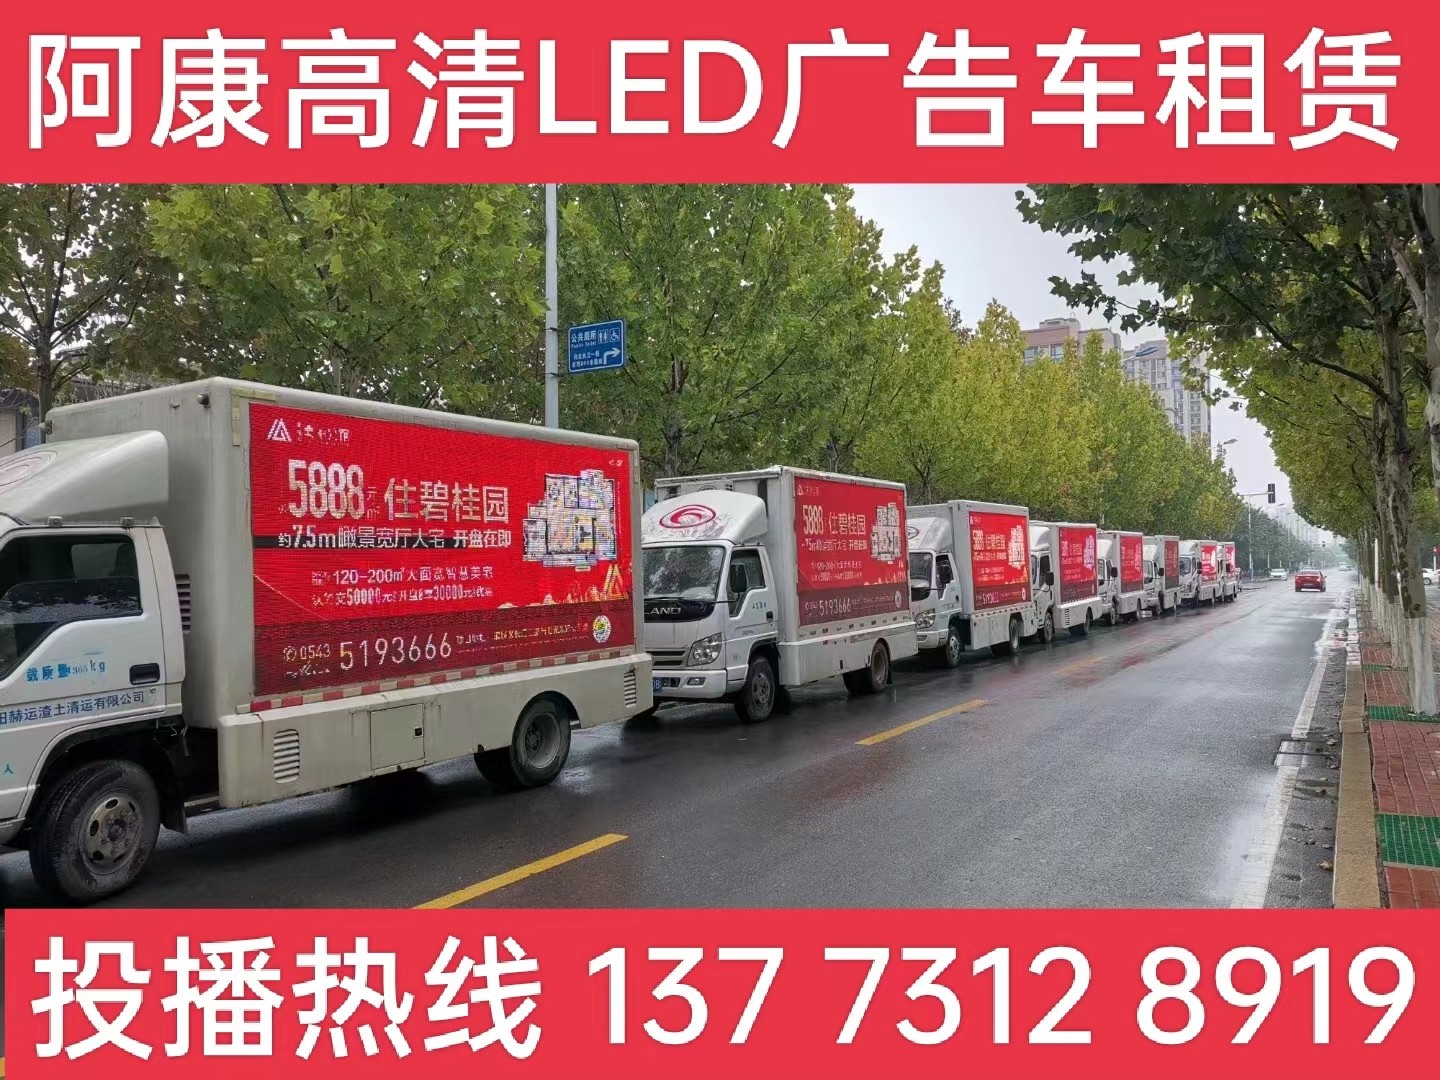 泰兴宣传车租赁公司-楼盘LED广告车投放